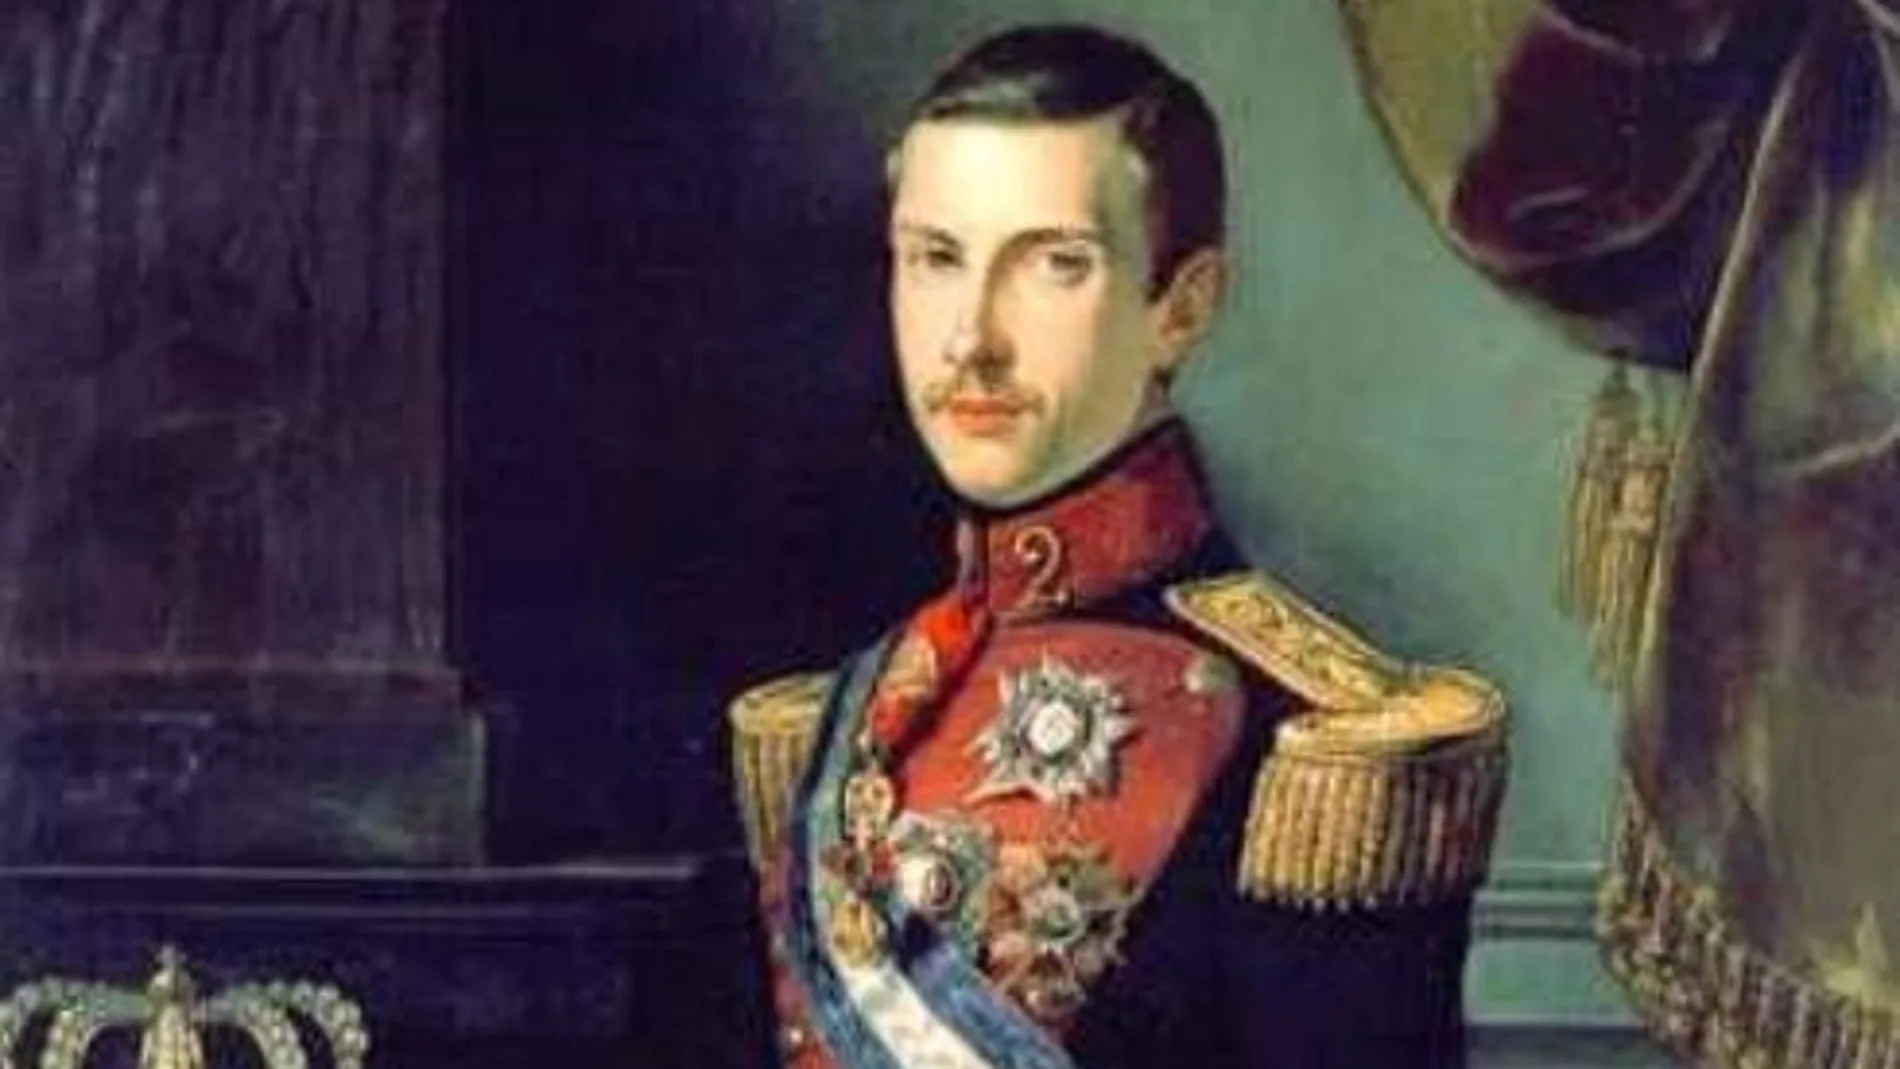  Retrato del rey consorte Francisco de Asís de Borbón pintado por Federico Madrazo